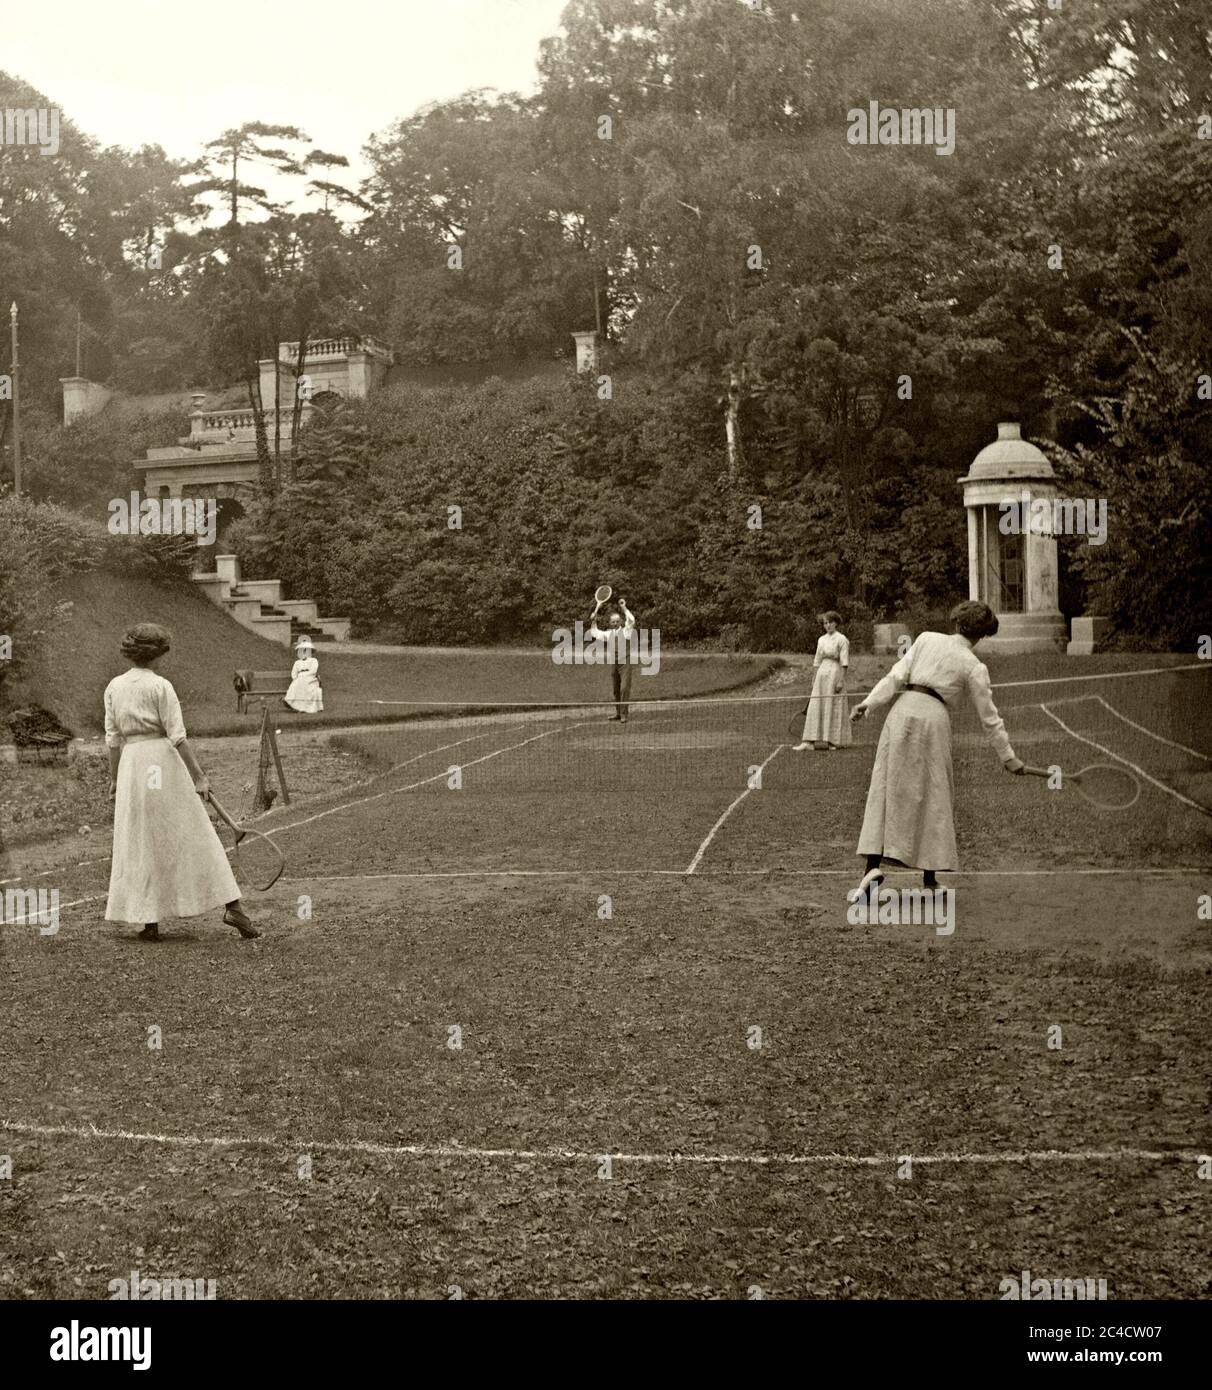 Un jeu de tennis en douceur au Royaume-Uni vers 1900 – un homme et trois dames jouent dans une maison de campagne/un jardin majestueux sur un terrain de pelouse très inégal. Le sport ressemble ici à un passe-temps des classes supérieures. Banque D'Images